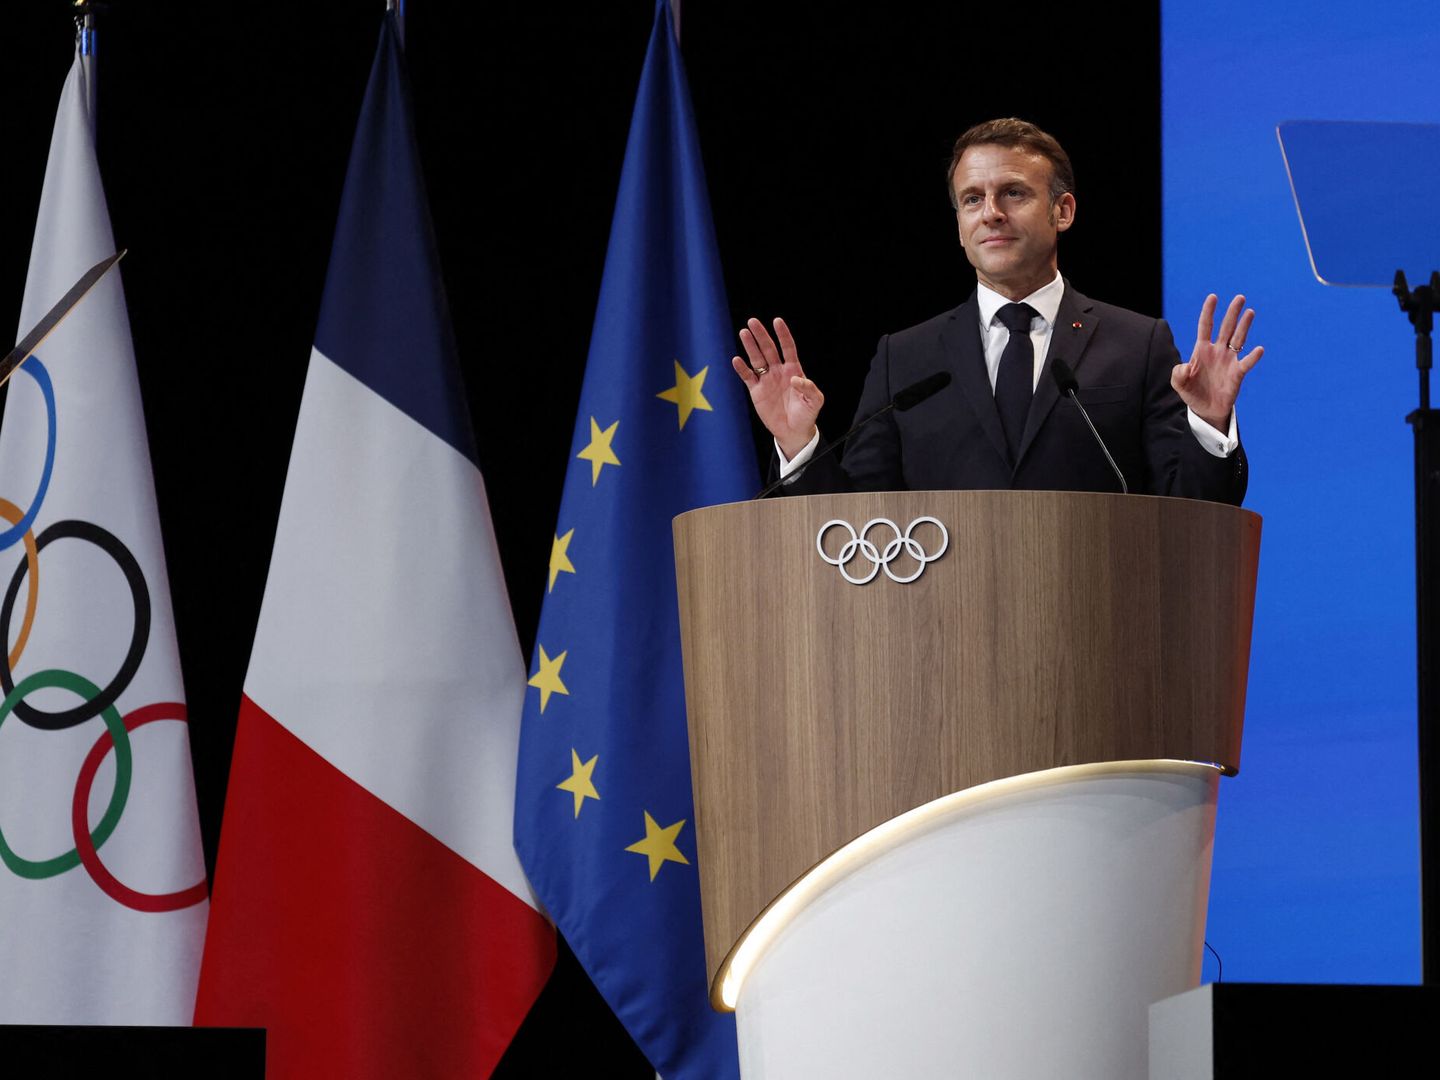 París albergará por tercera vez en la historia los Juegos Olímpicos y Paralímpicos, igualando a Londres. (REUTERS/Gonzalo Fuentes)